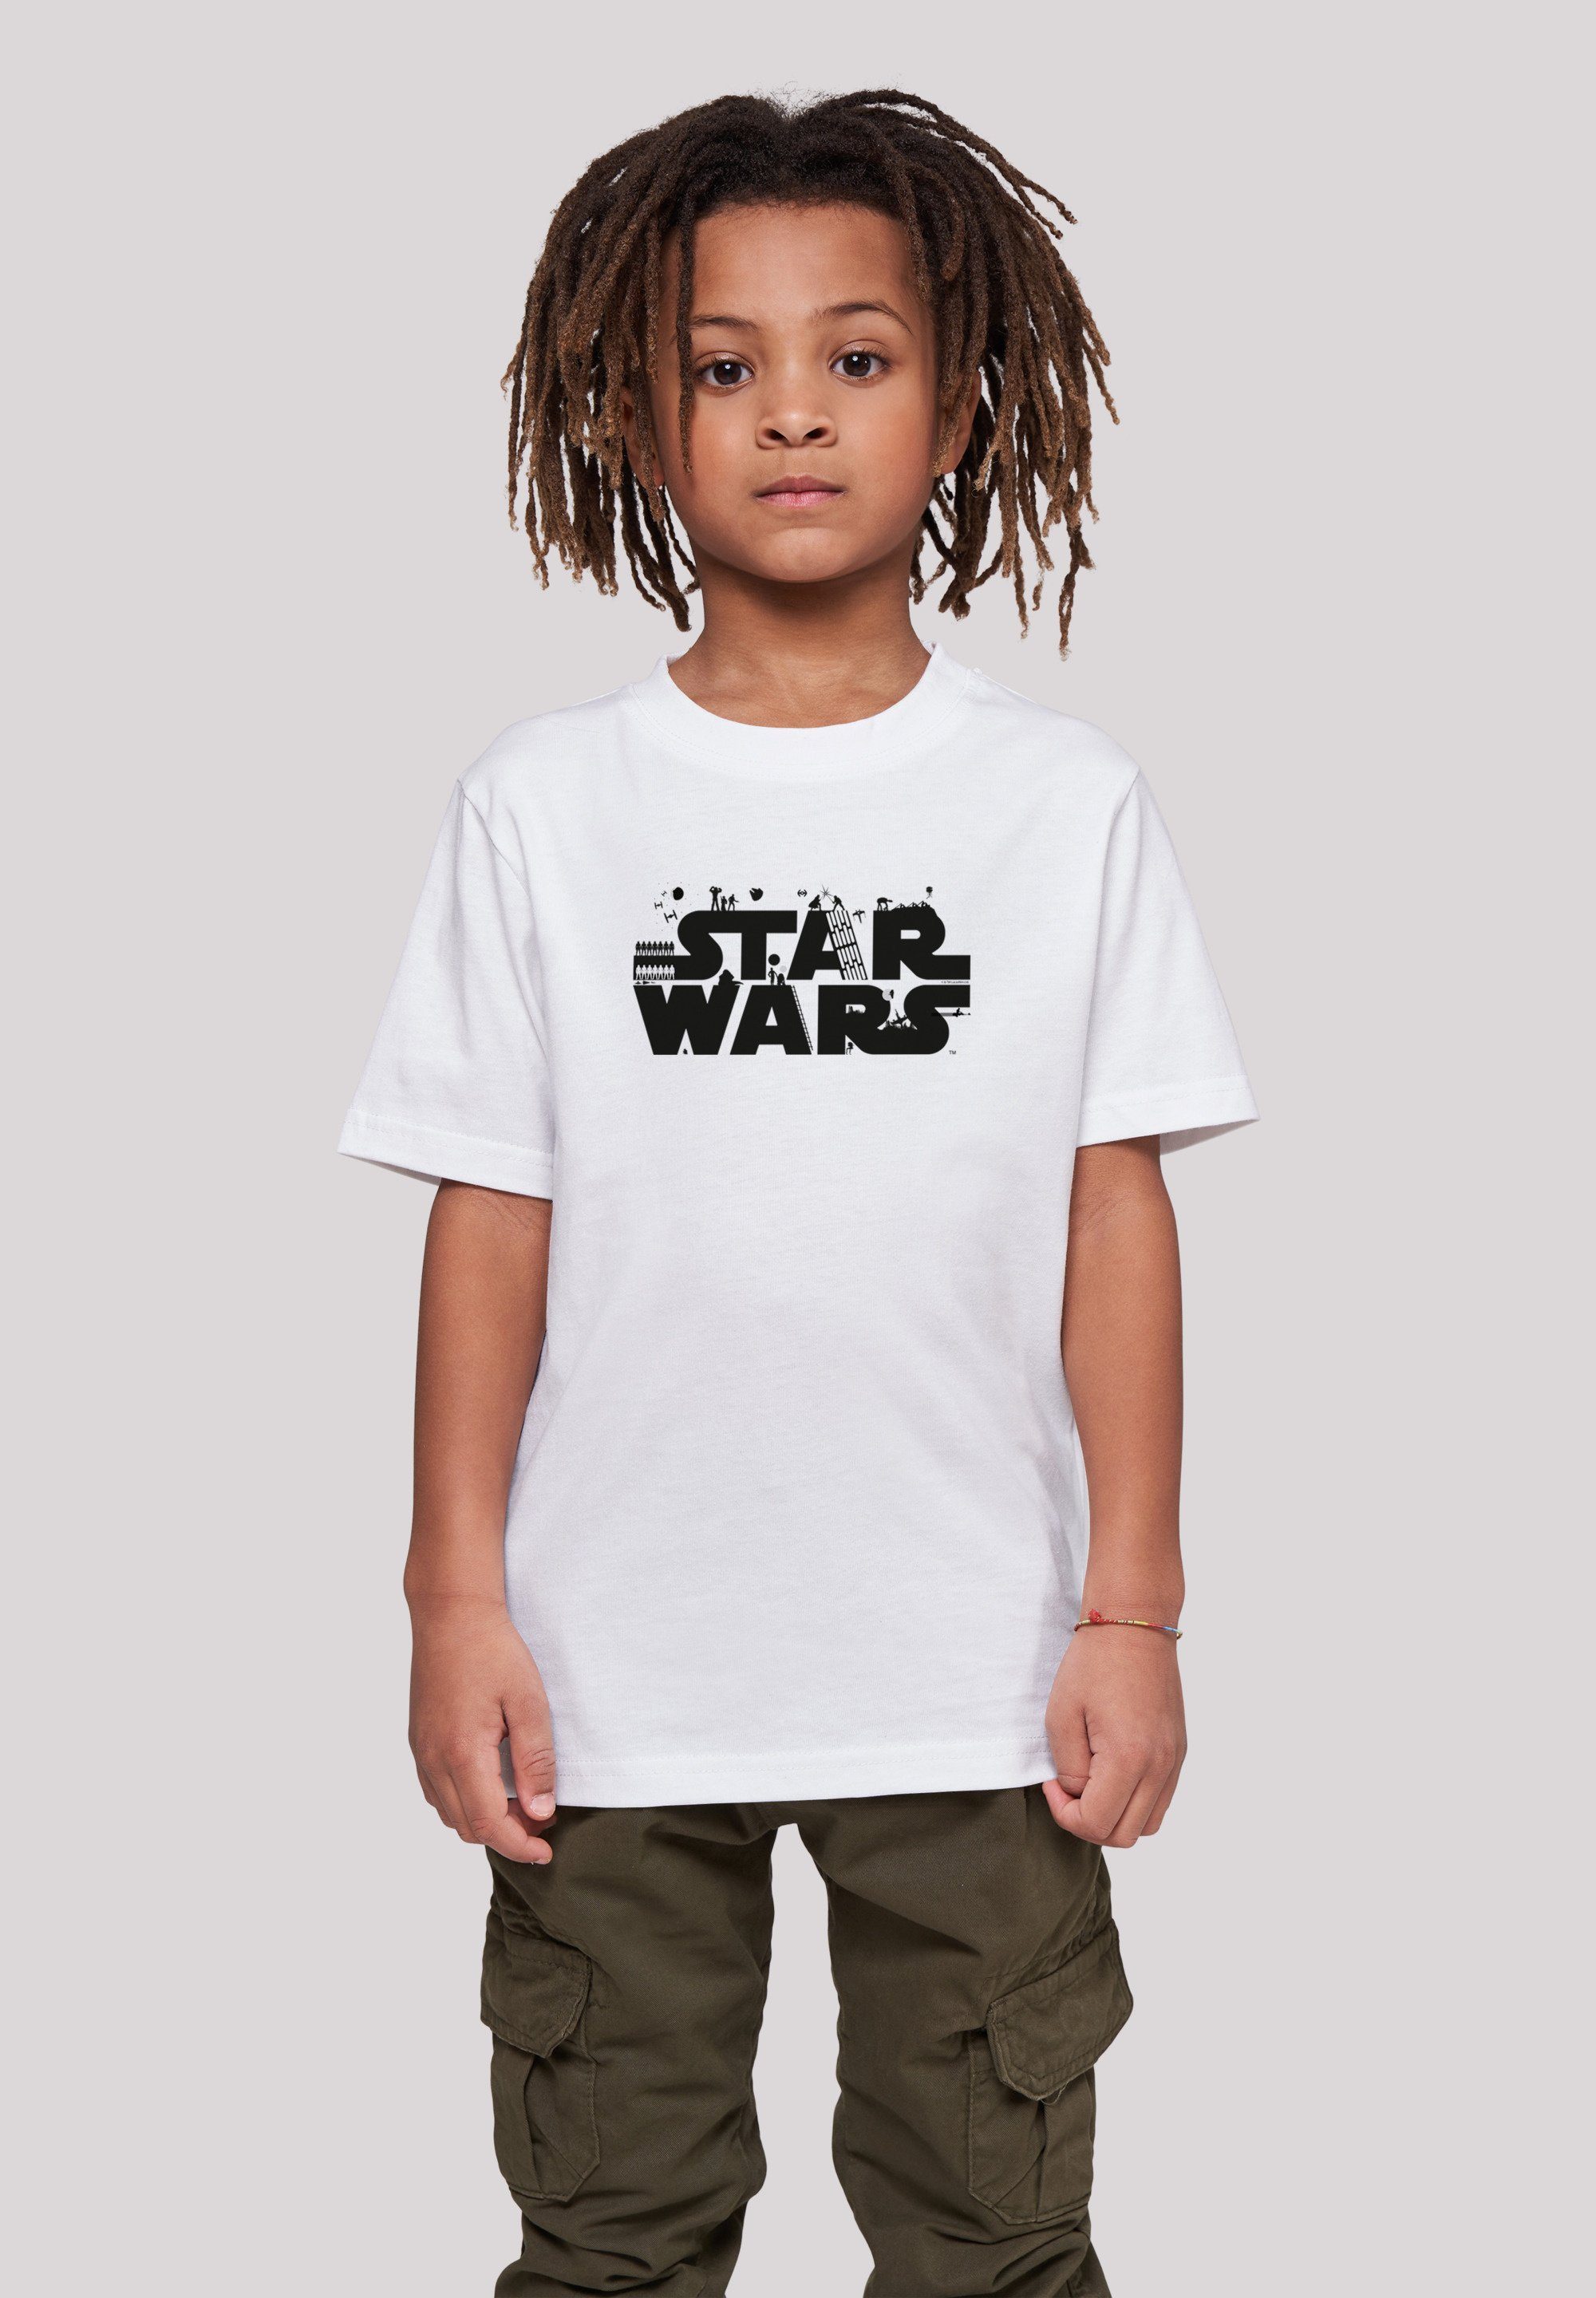 Logo Kinder,Premium T-Shirt Minimalist Jungen,Mädchen,Bedruckt Wars Star F4NT4STIC Merch, Unisex